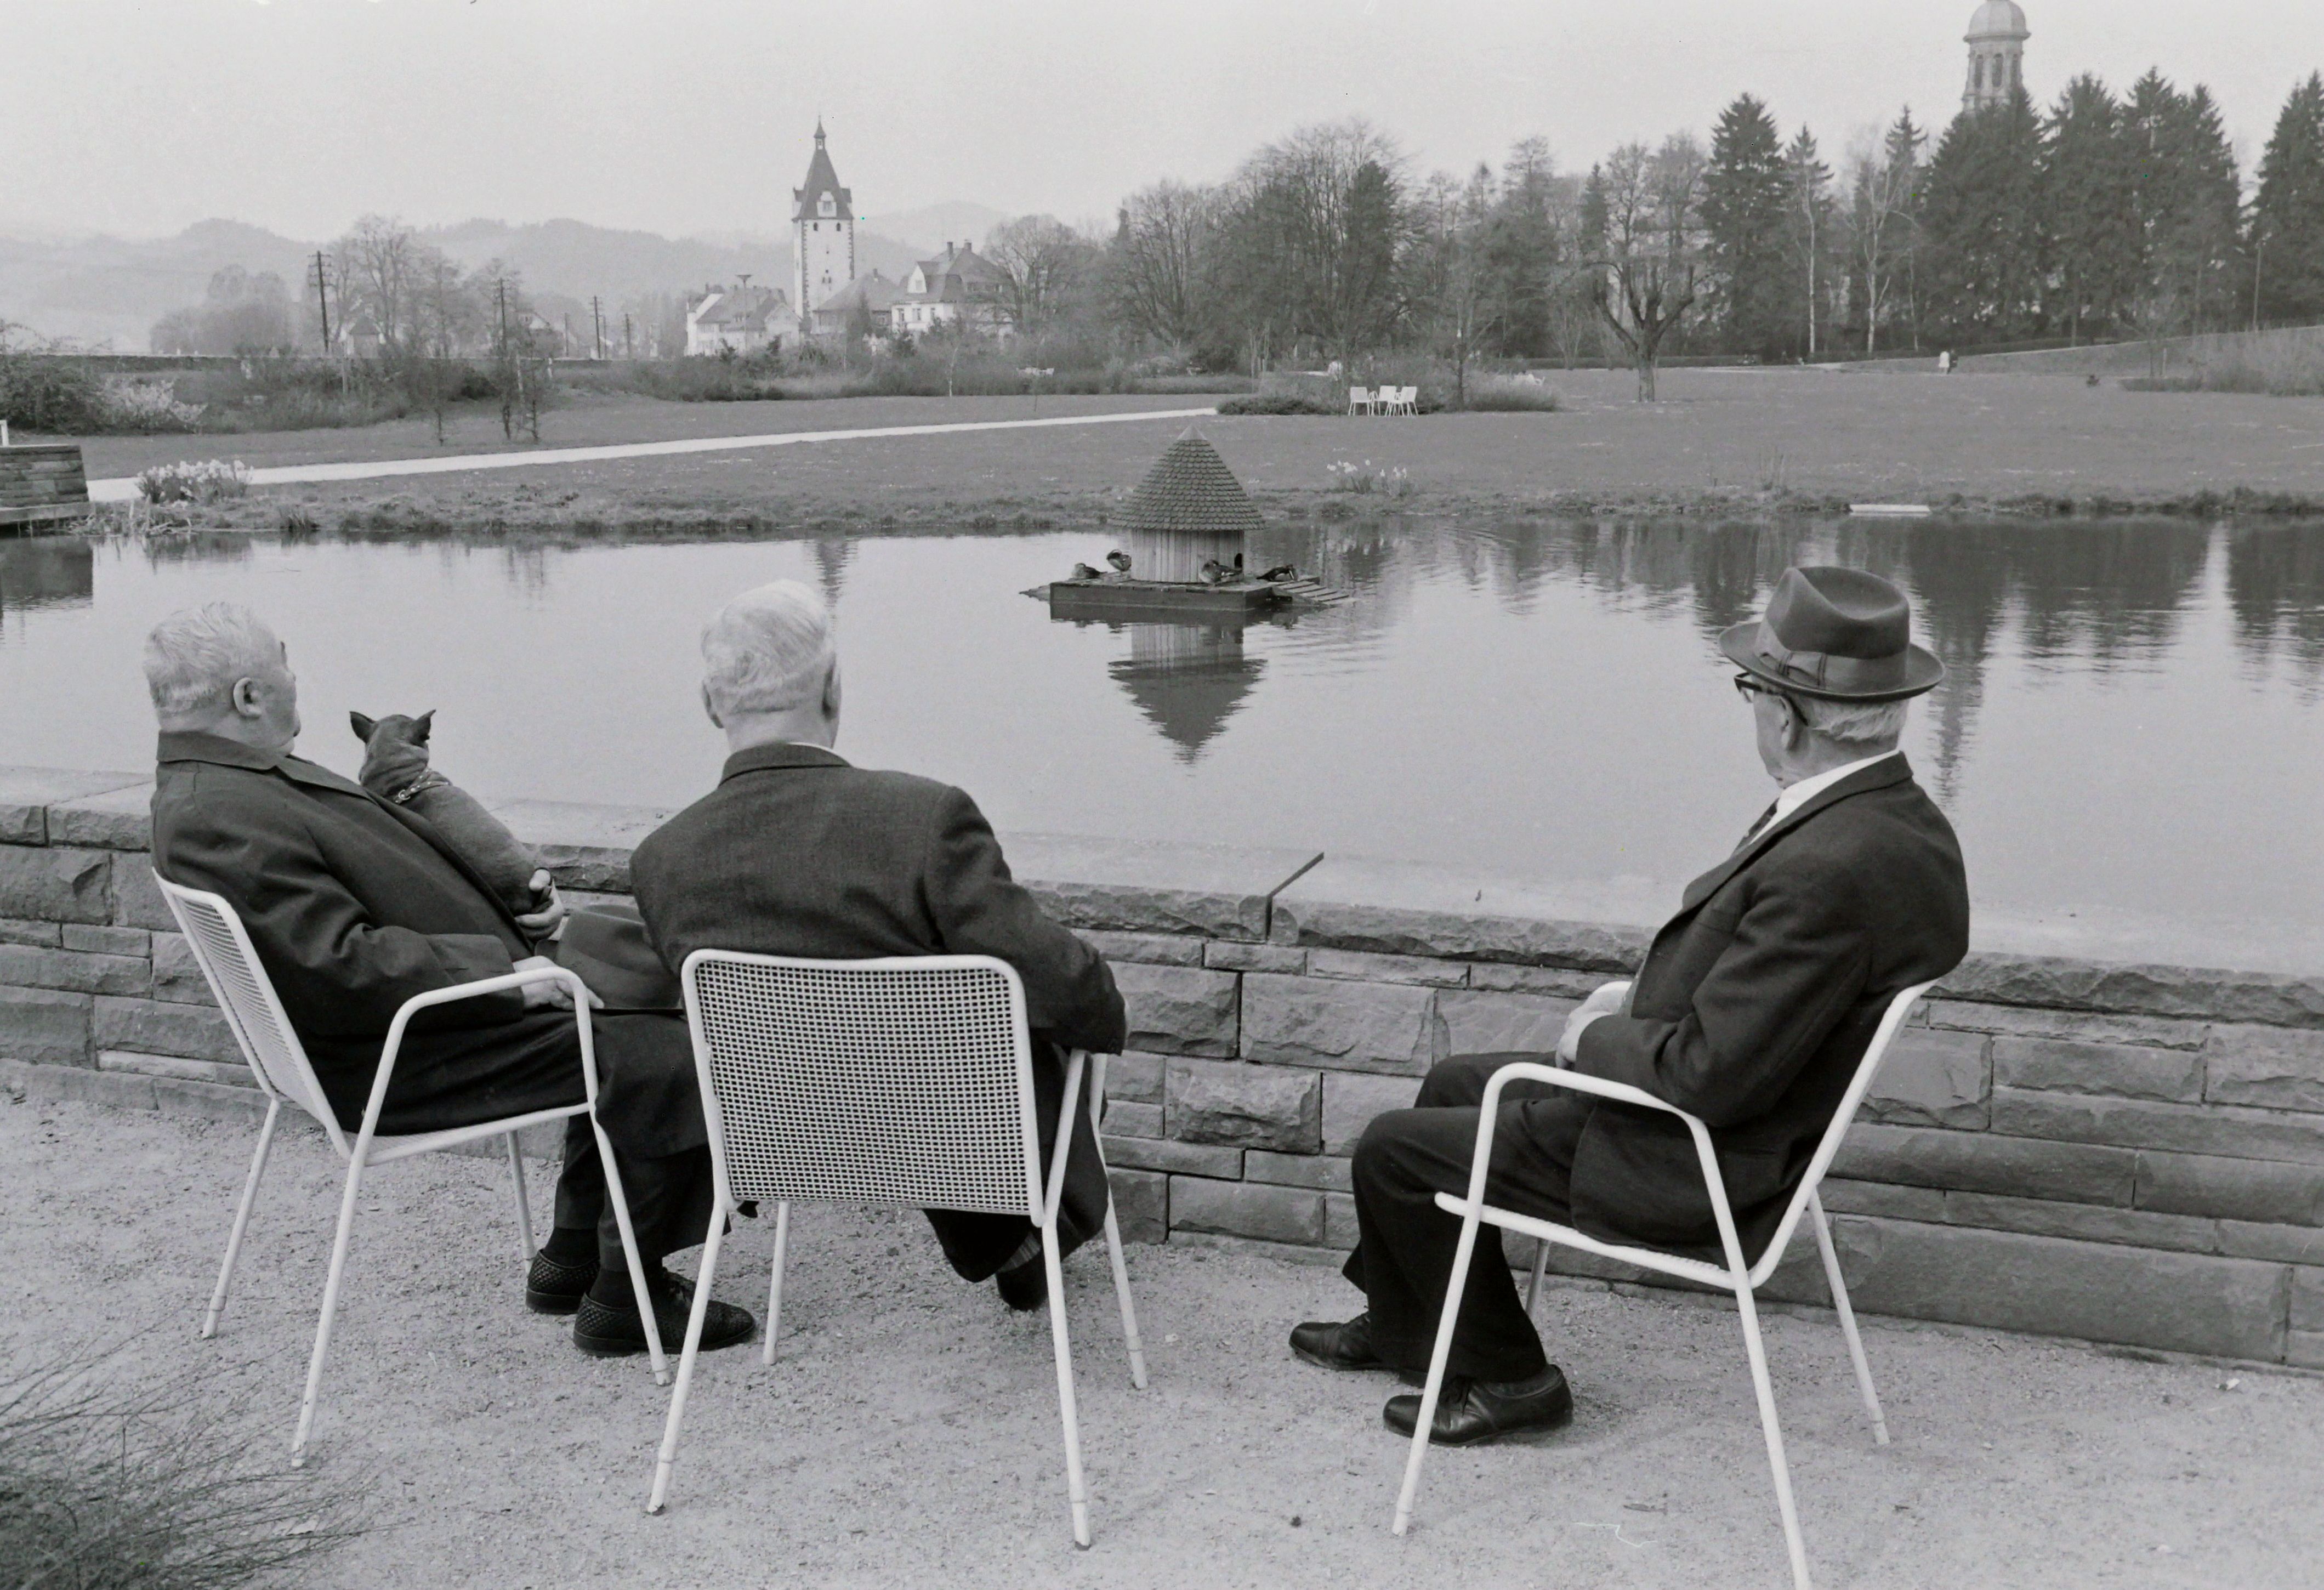 Drei Herren in der Schneckenmatte am Enten gucken, Schnappschuss von Friedrich Strohm im März 1972
